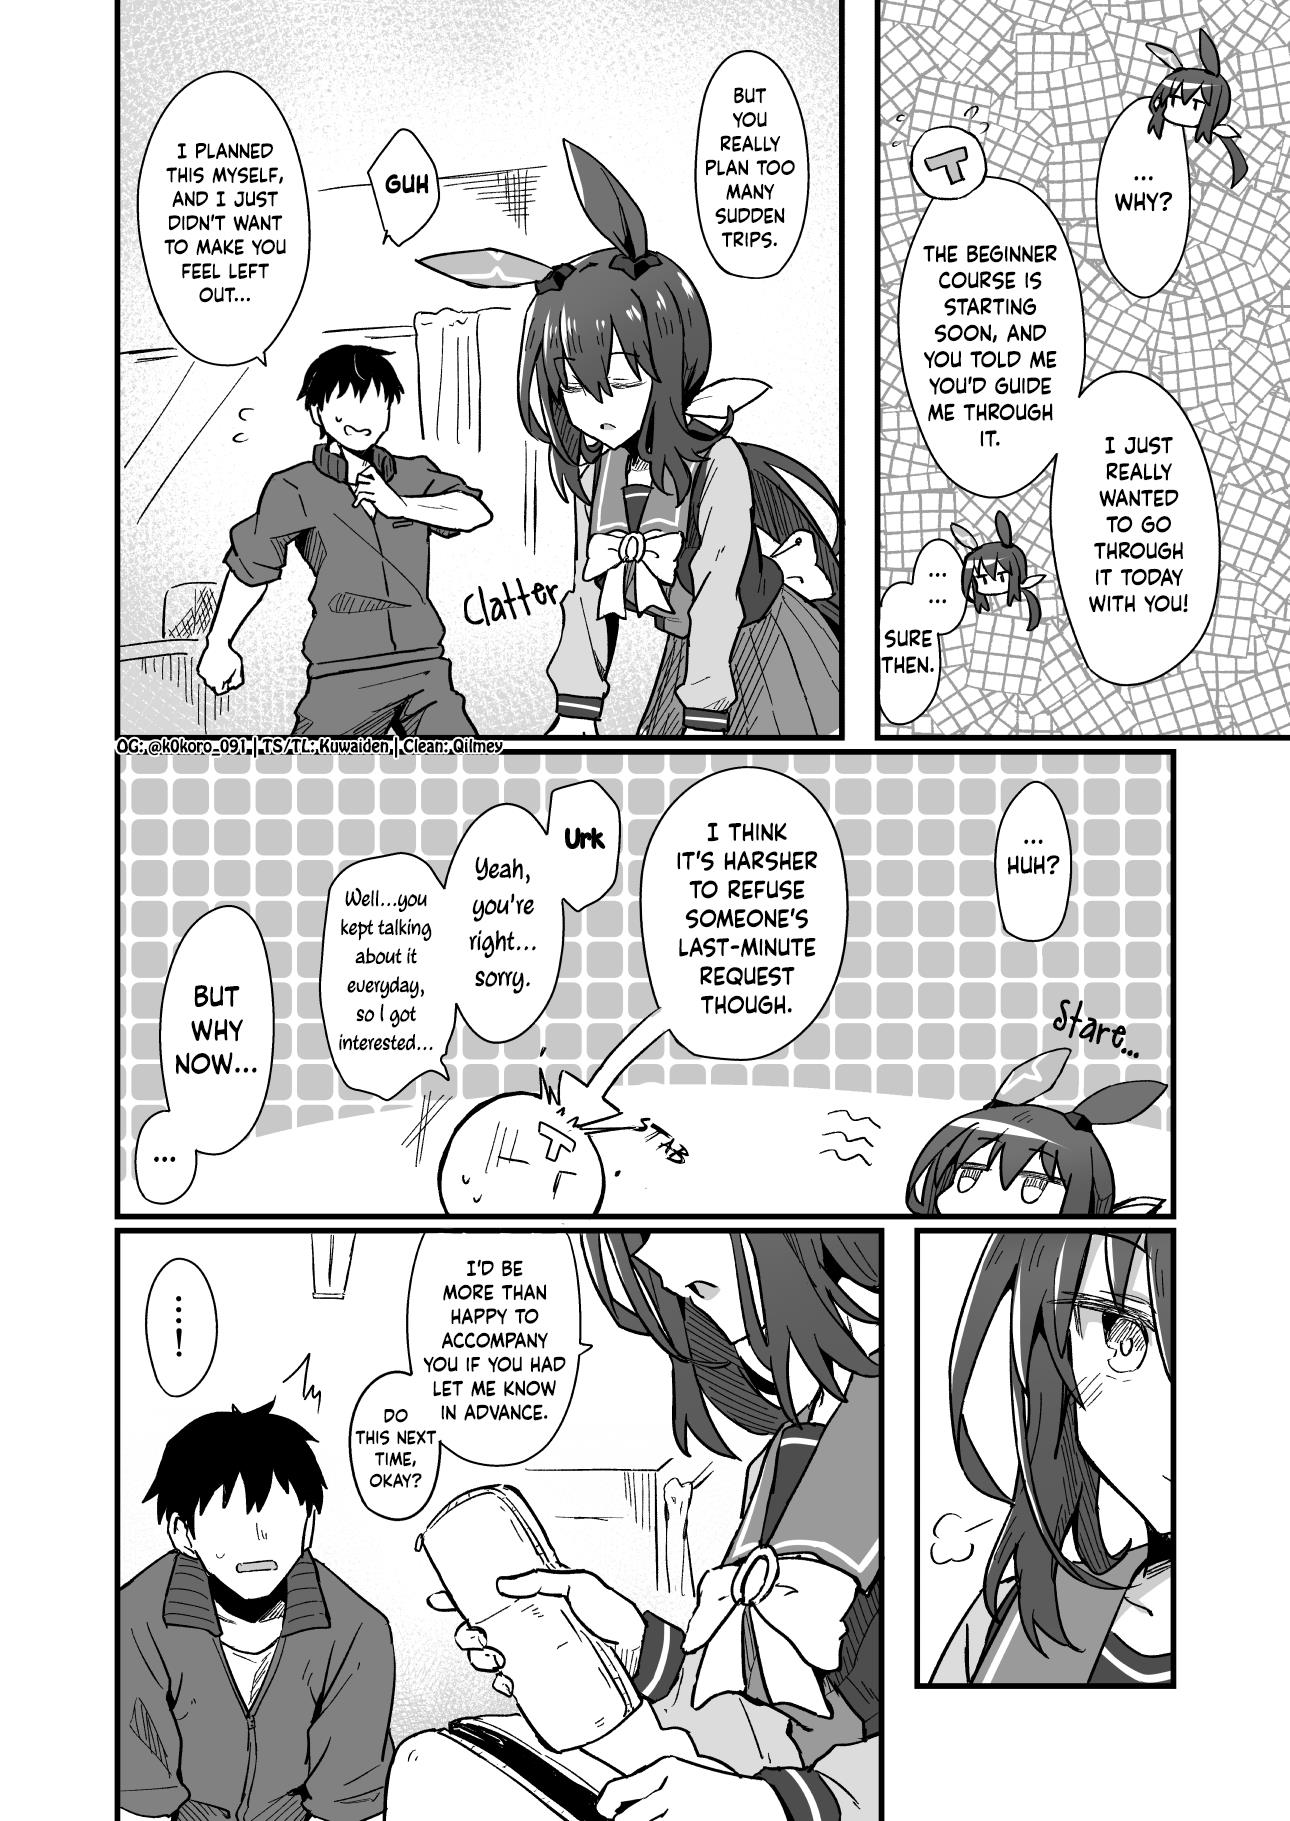 Kokoro-Sensei's Umamusume Shorts (Doujinshi) - Page 2